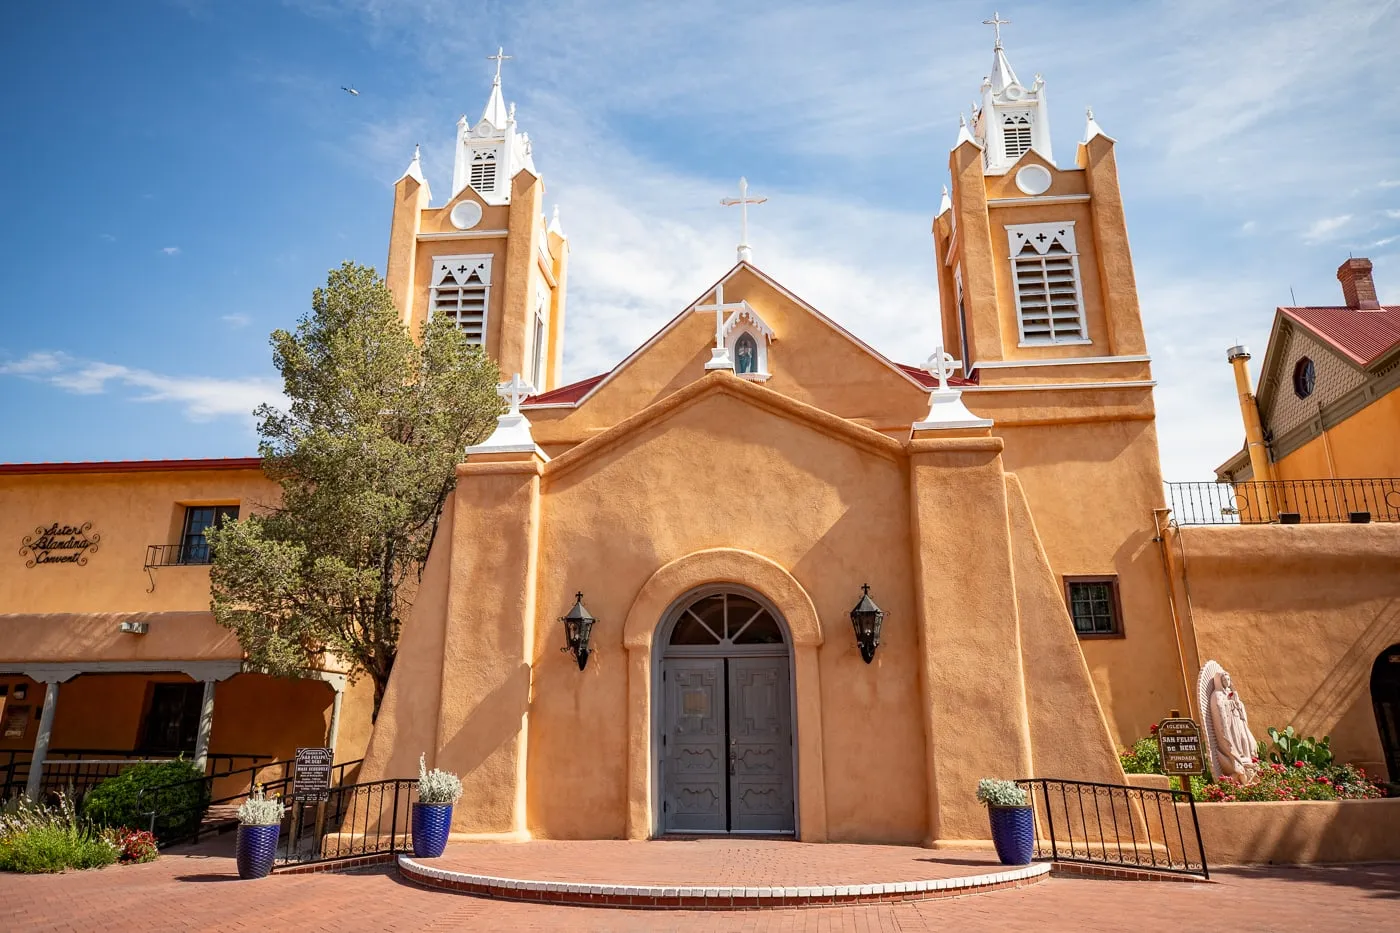 San Felipe de Neri Parish in Albuquerque, New Mexico